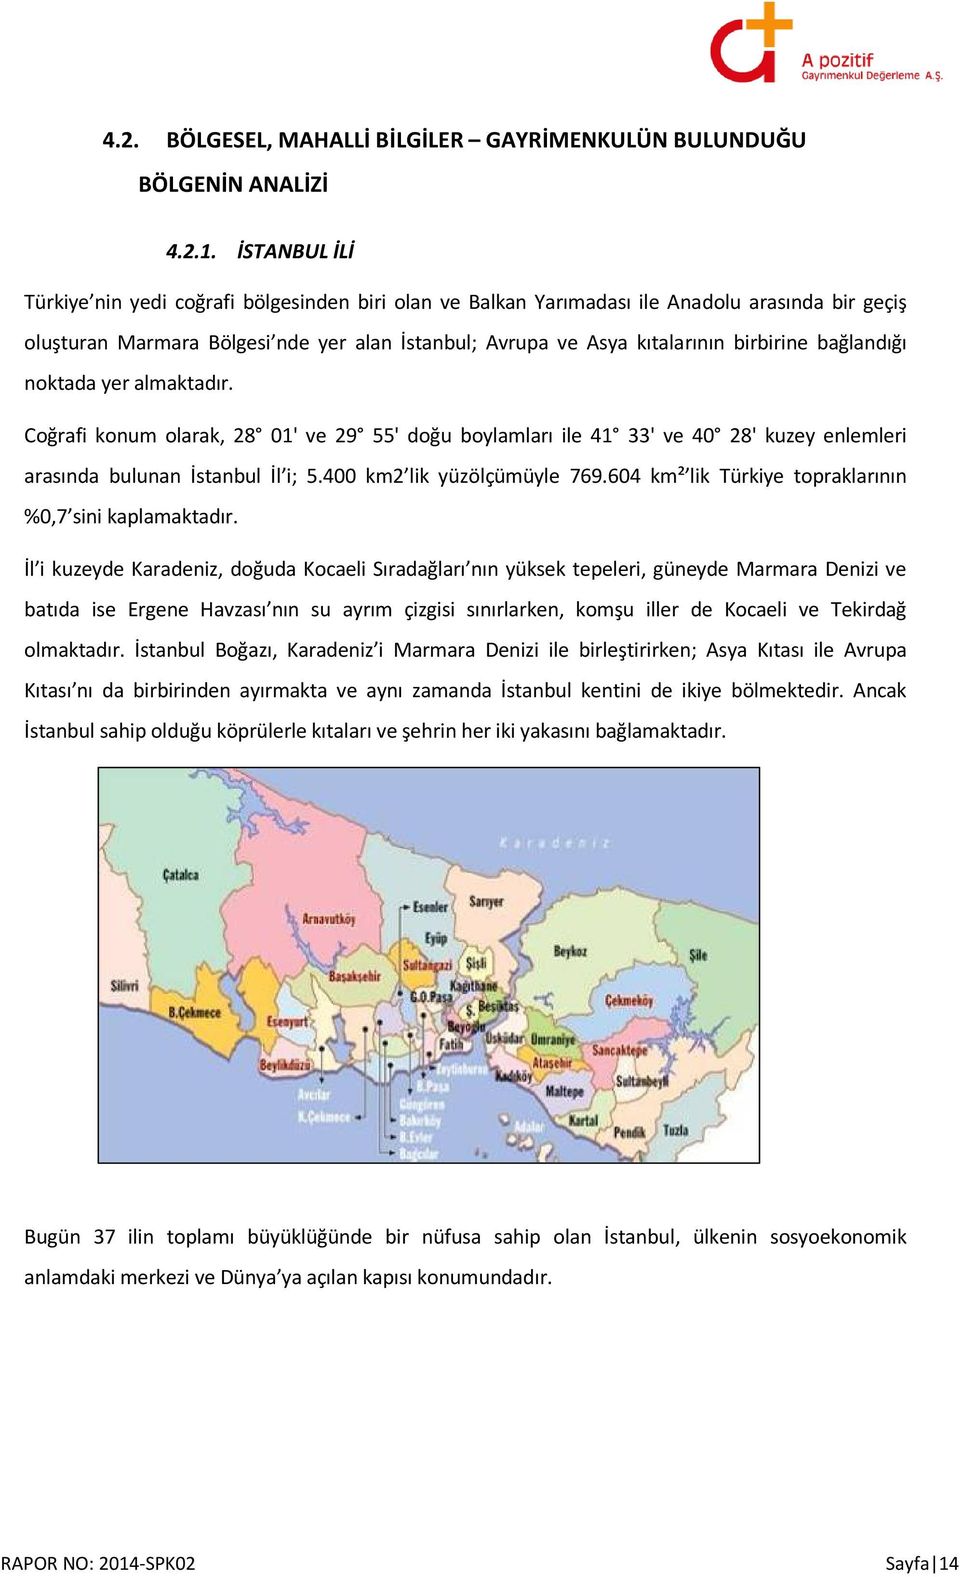 bağlandığı noktada yer almaktadır. Coğrafi konum olarak, 28 01' ve 29 55' doğu boylamları ile 41 33' ve 40 28' kuzey enlemleri arasında bulunan İstanbul İl i; 5.400 km2 lik yüzölçümüyle 769.